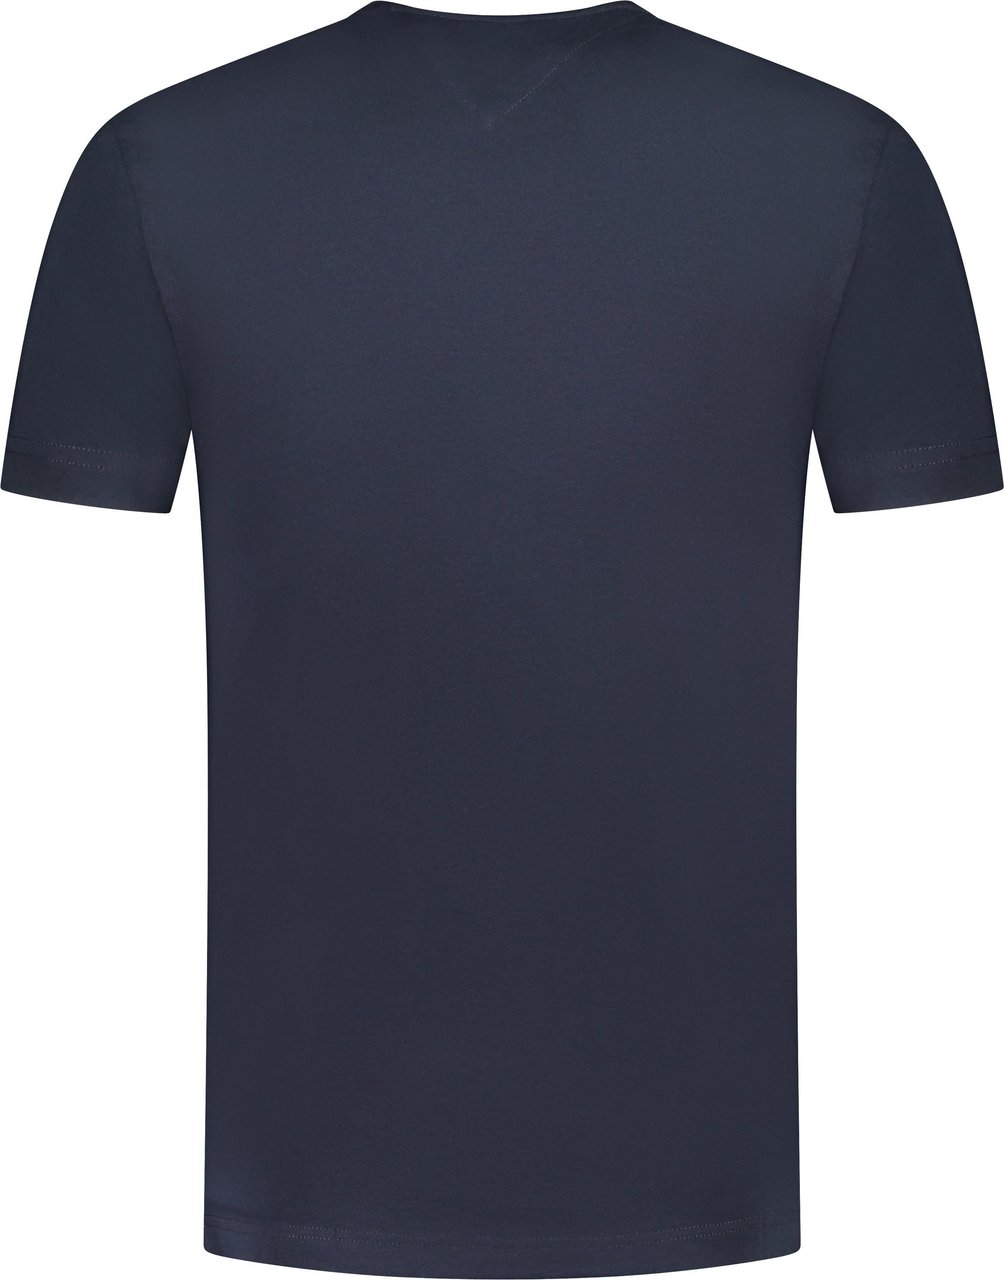 Tommy Hilfiger T-shirt Blauw Blauw